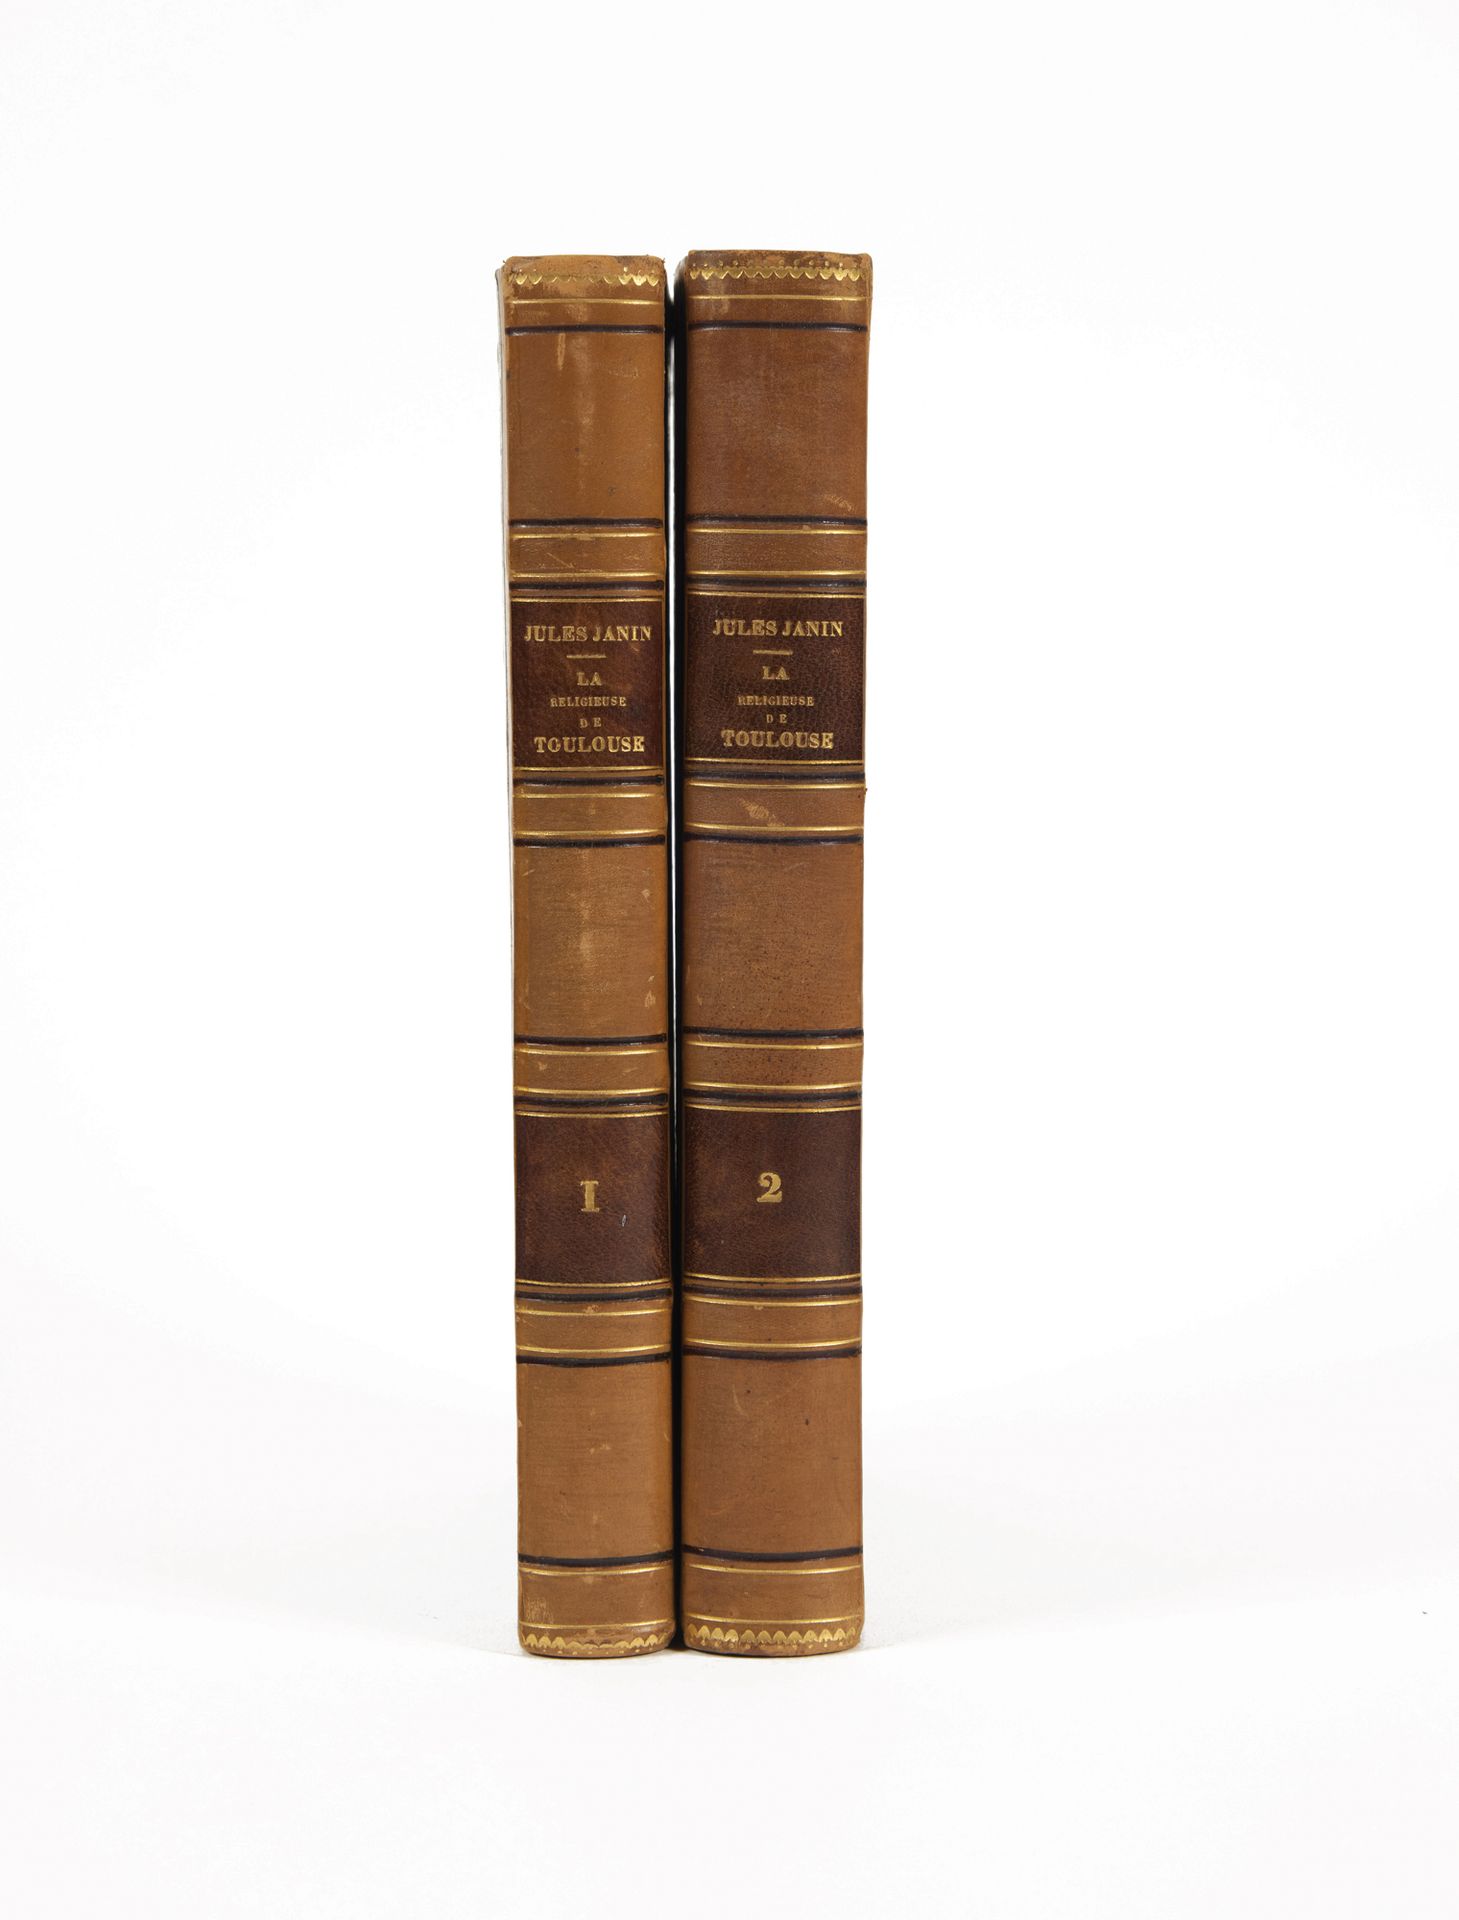 JANIN, Jules. 图卢兹的宗教人士。巴黎，米歇尔-莱维，1850年；2卷8开本，半金黄色小牛皮，酒红色标题和封底

书名和封底为酒红色(当时的装订)。&hellip;